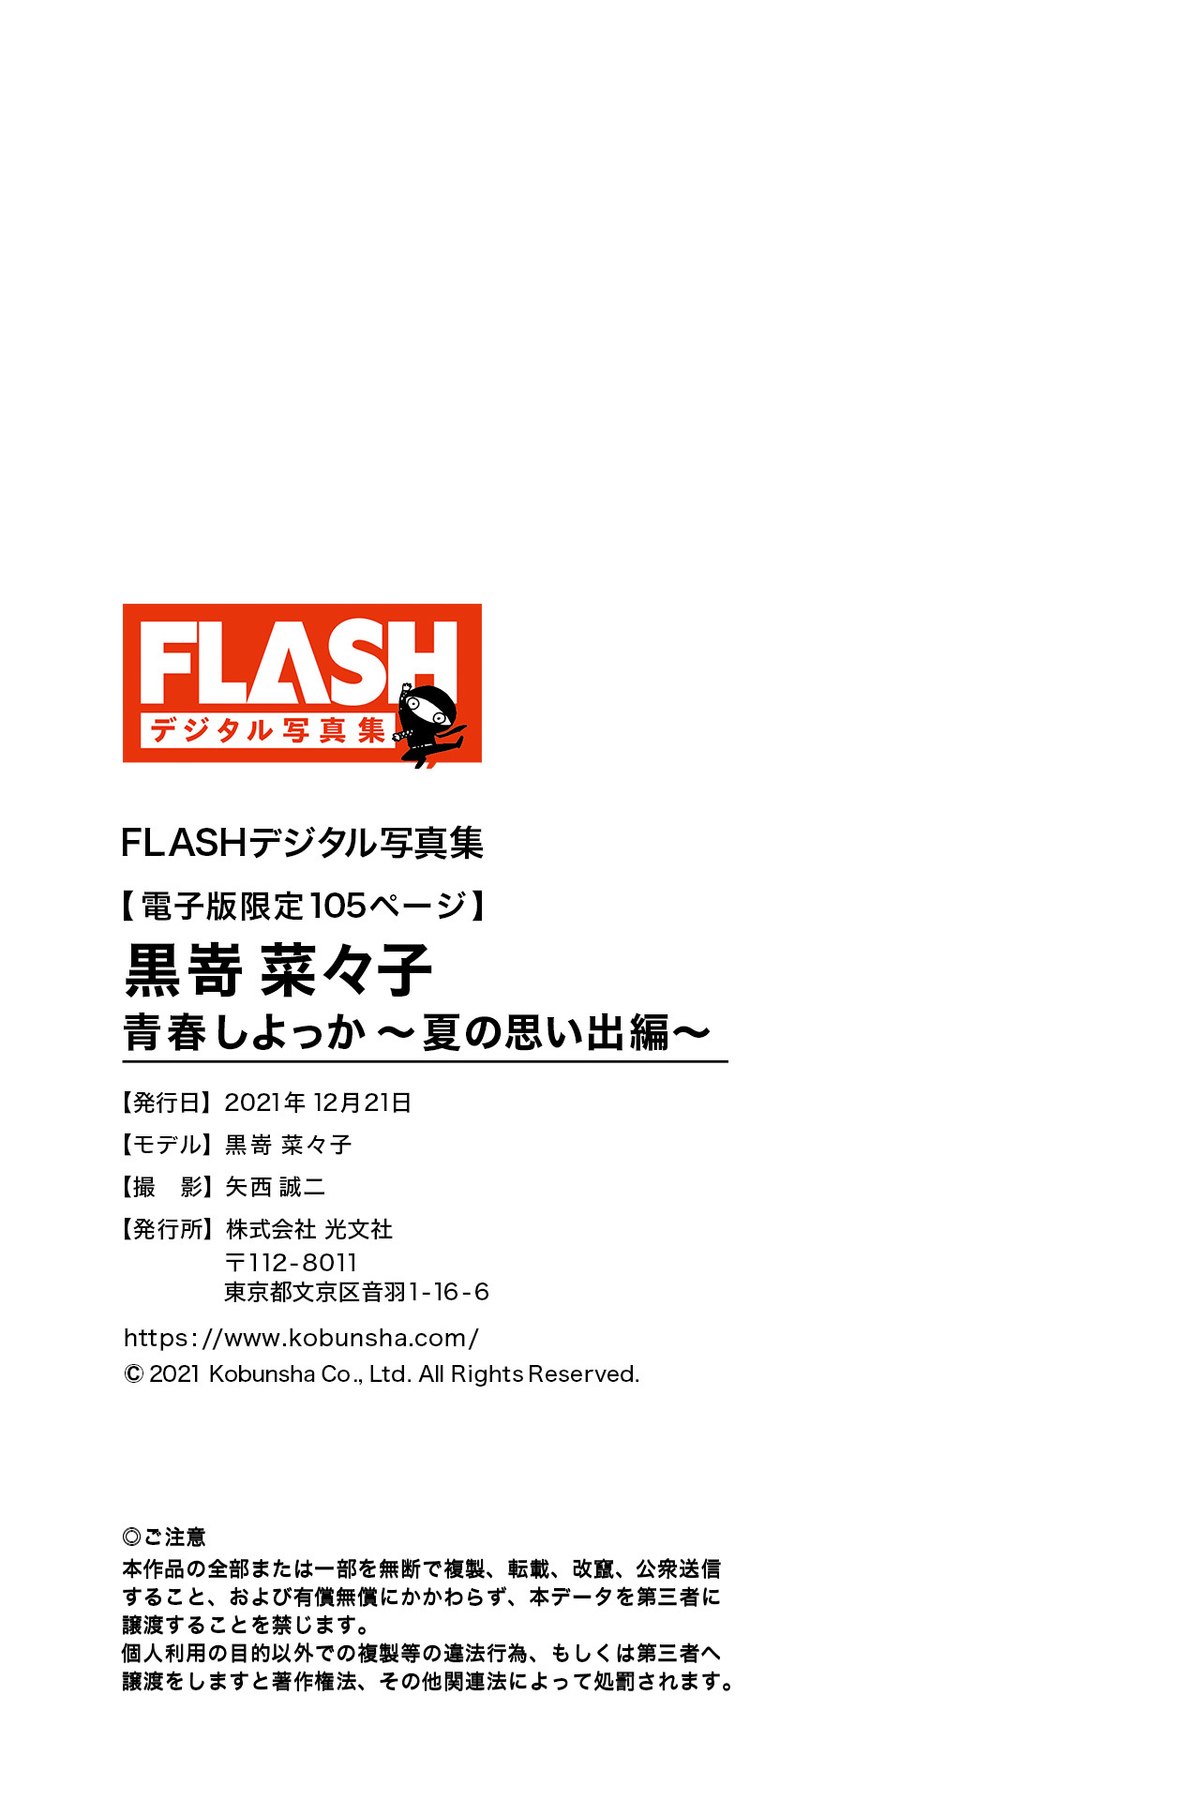 FLASH Photobook 2021 12 21 Nanako Kurosaki 黒嵜菜々子 Youth Shiyokka Summer memories 0100 6465127636.jpg